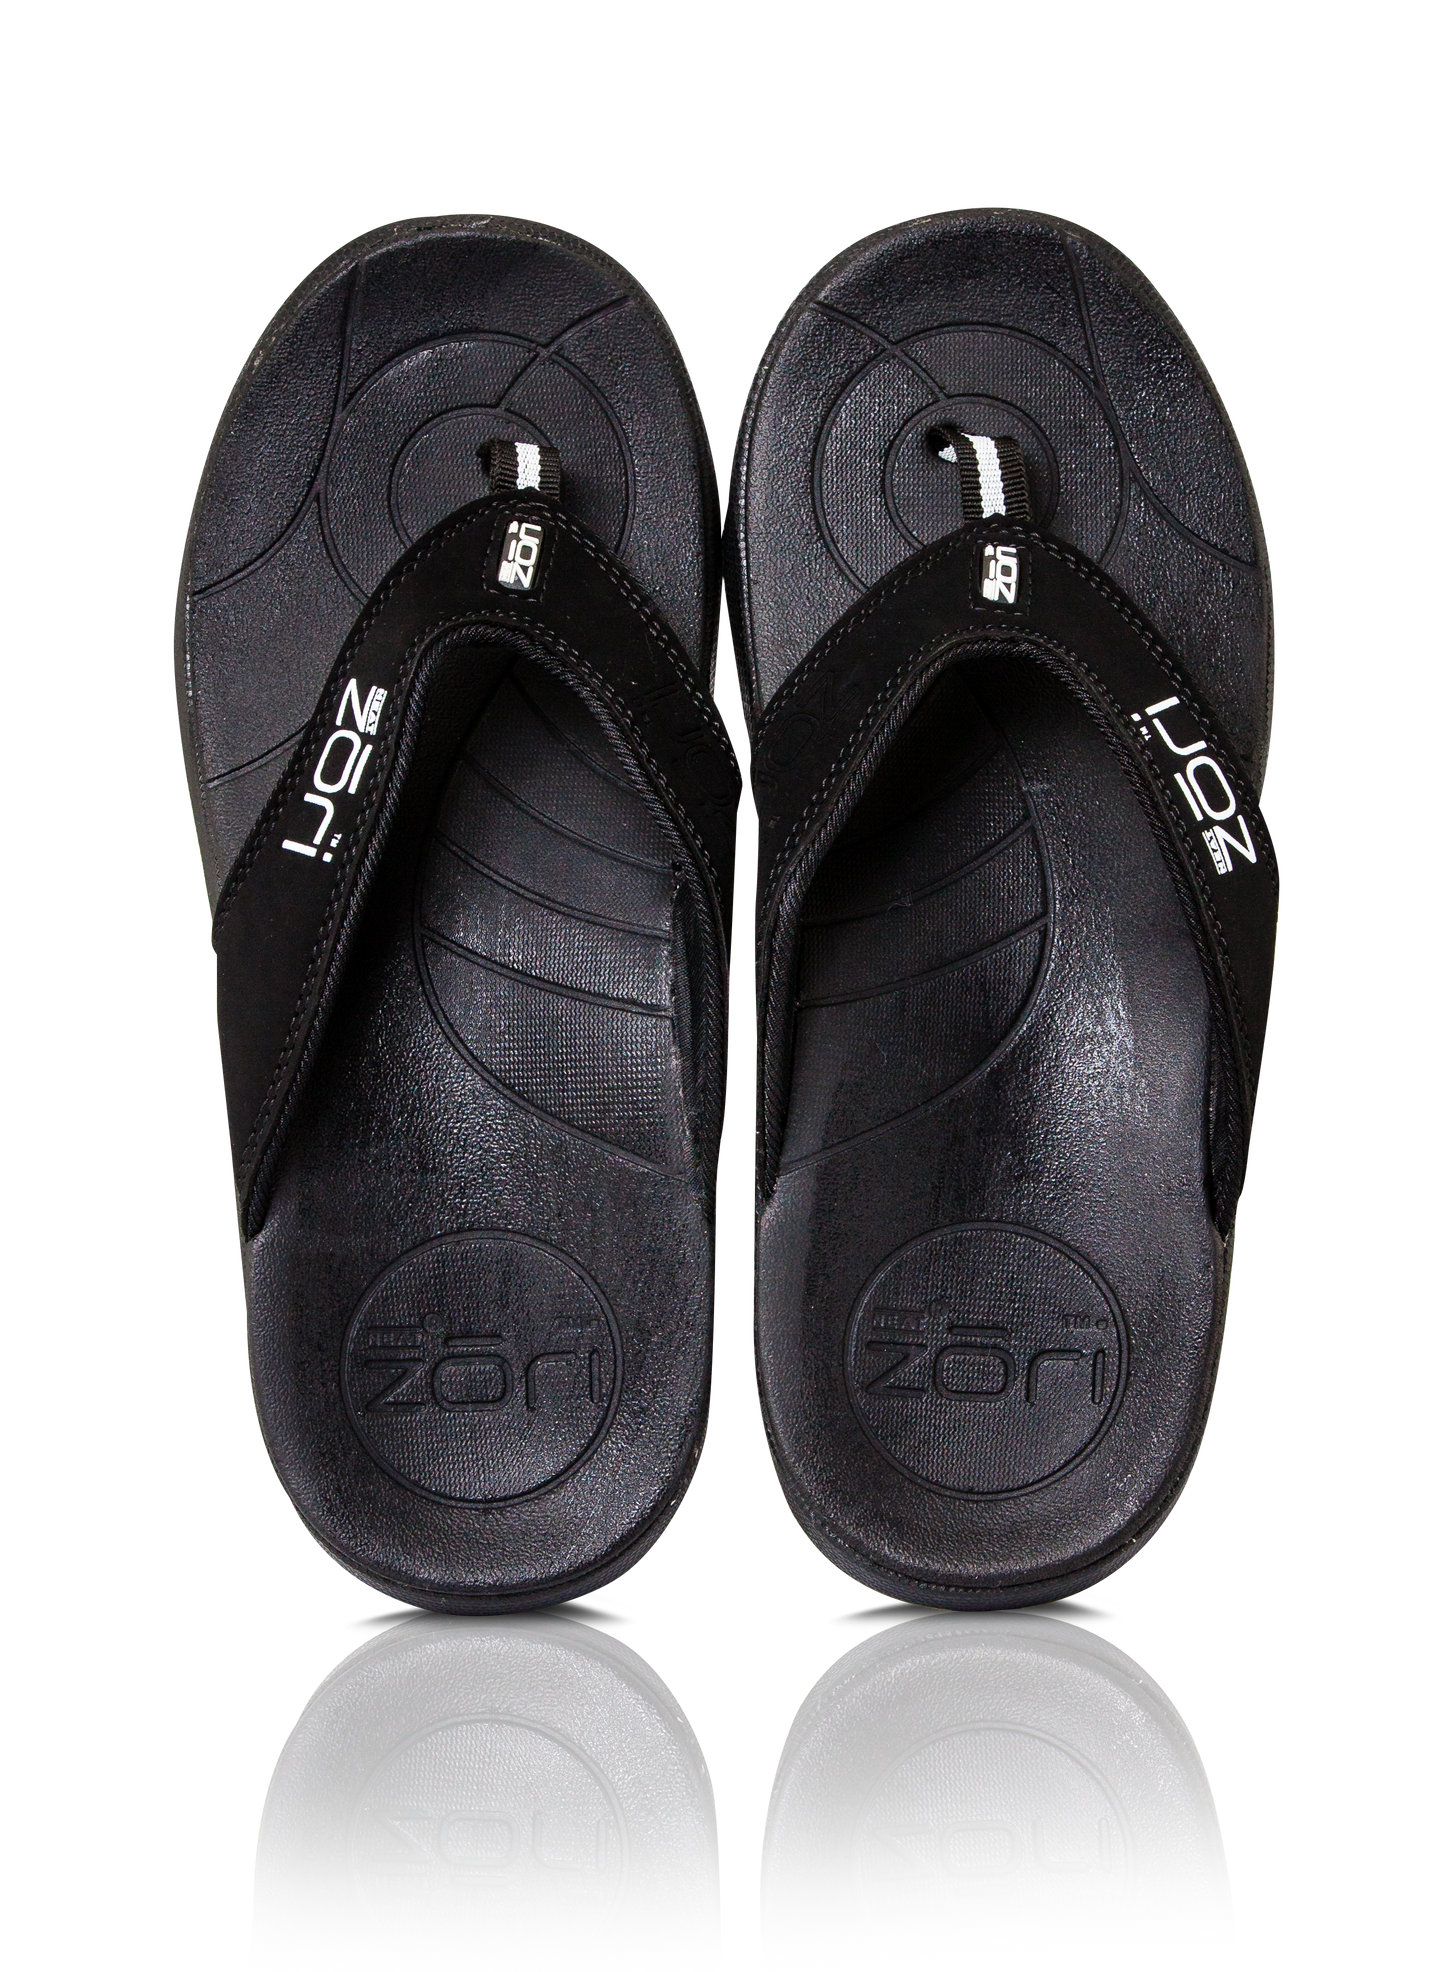 Netter zori noire noire string / sandale résistant à l'eau, saine et confortable